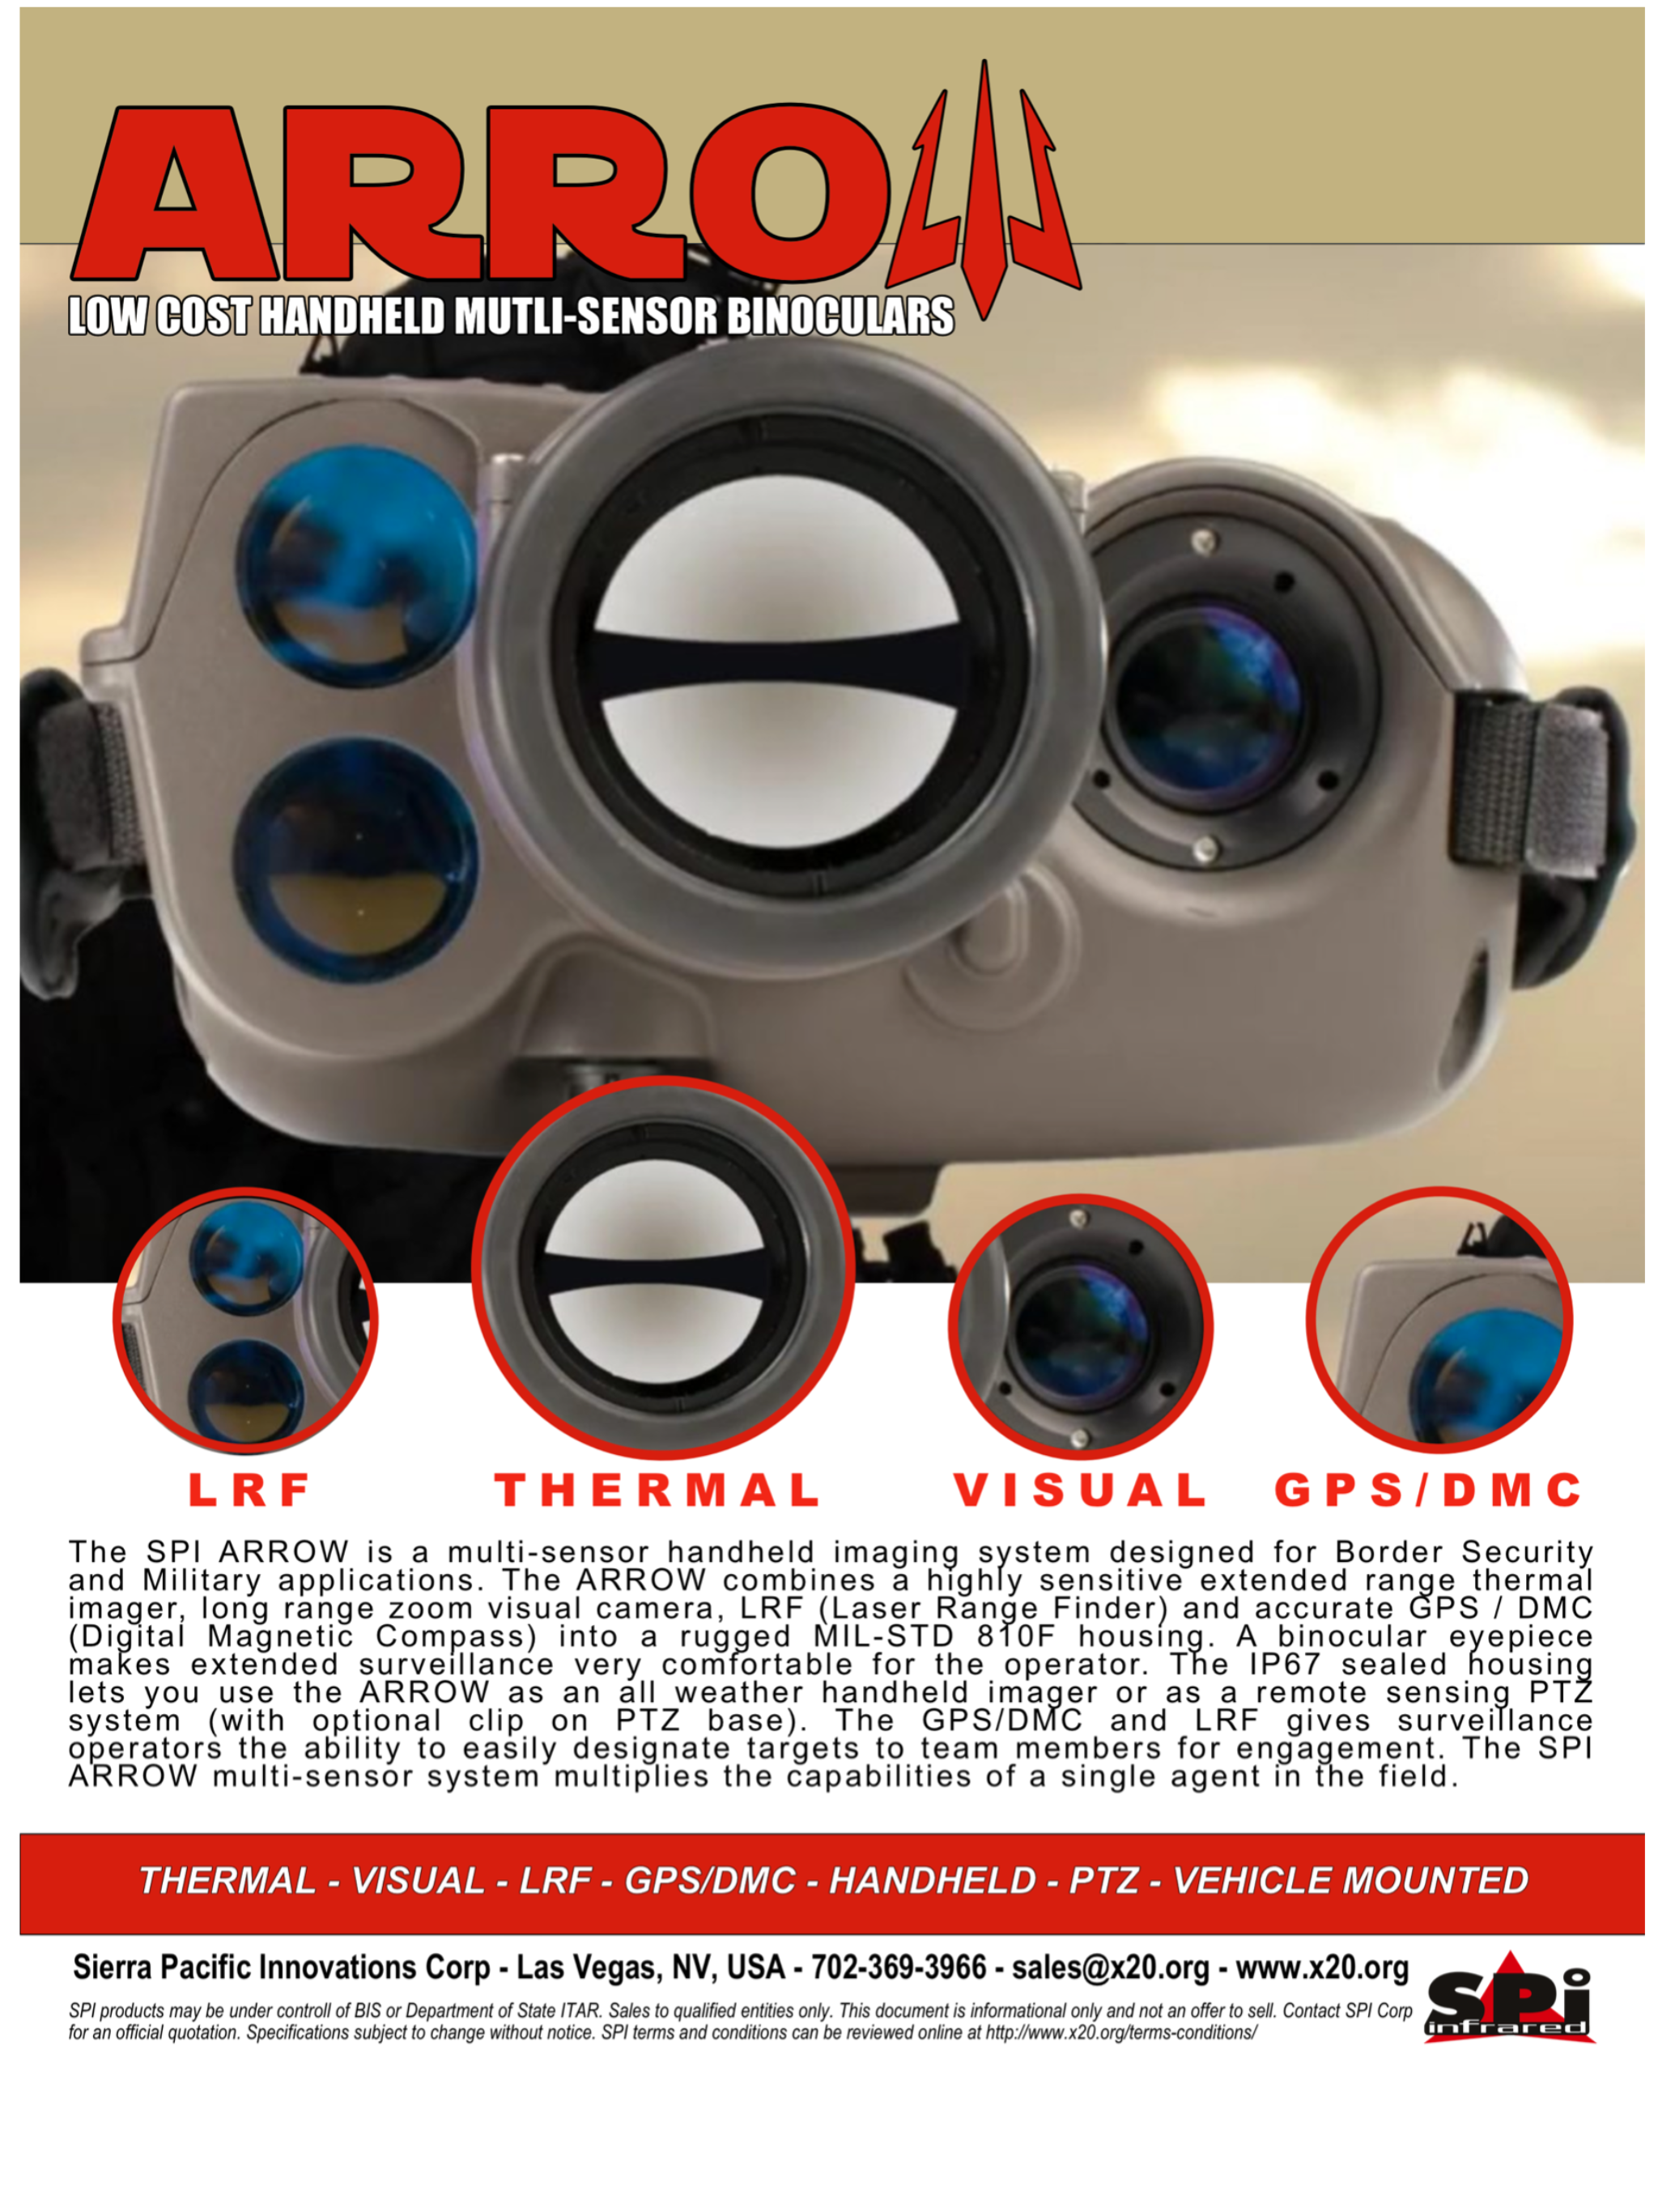 Long range thermal binoculars